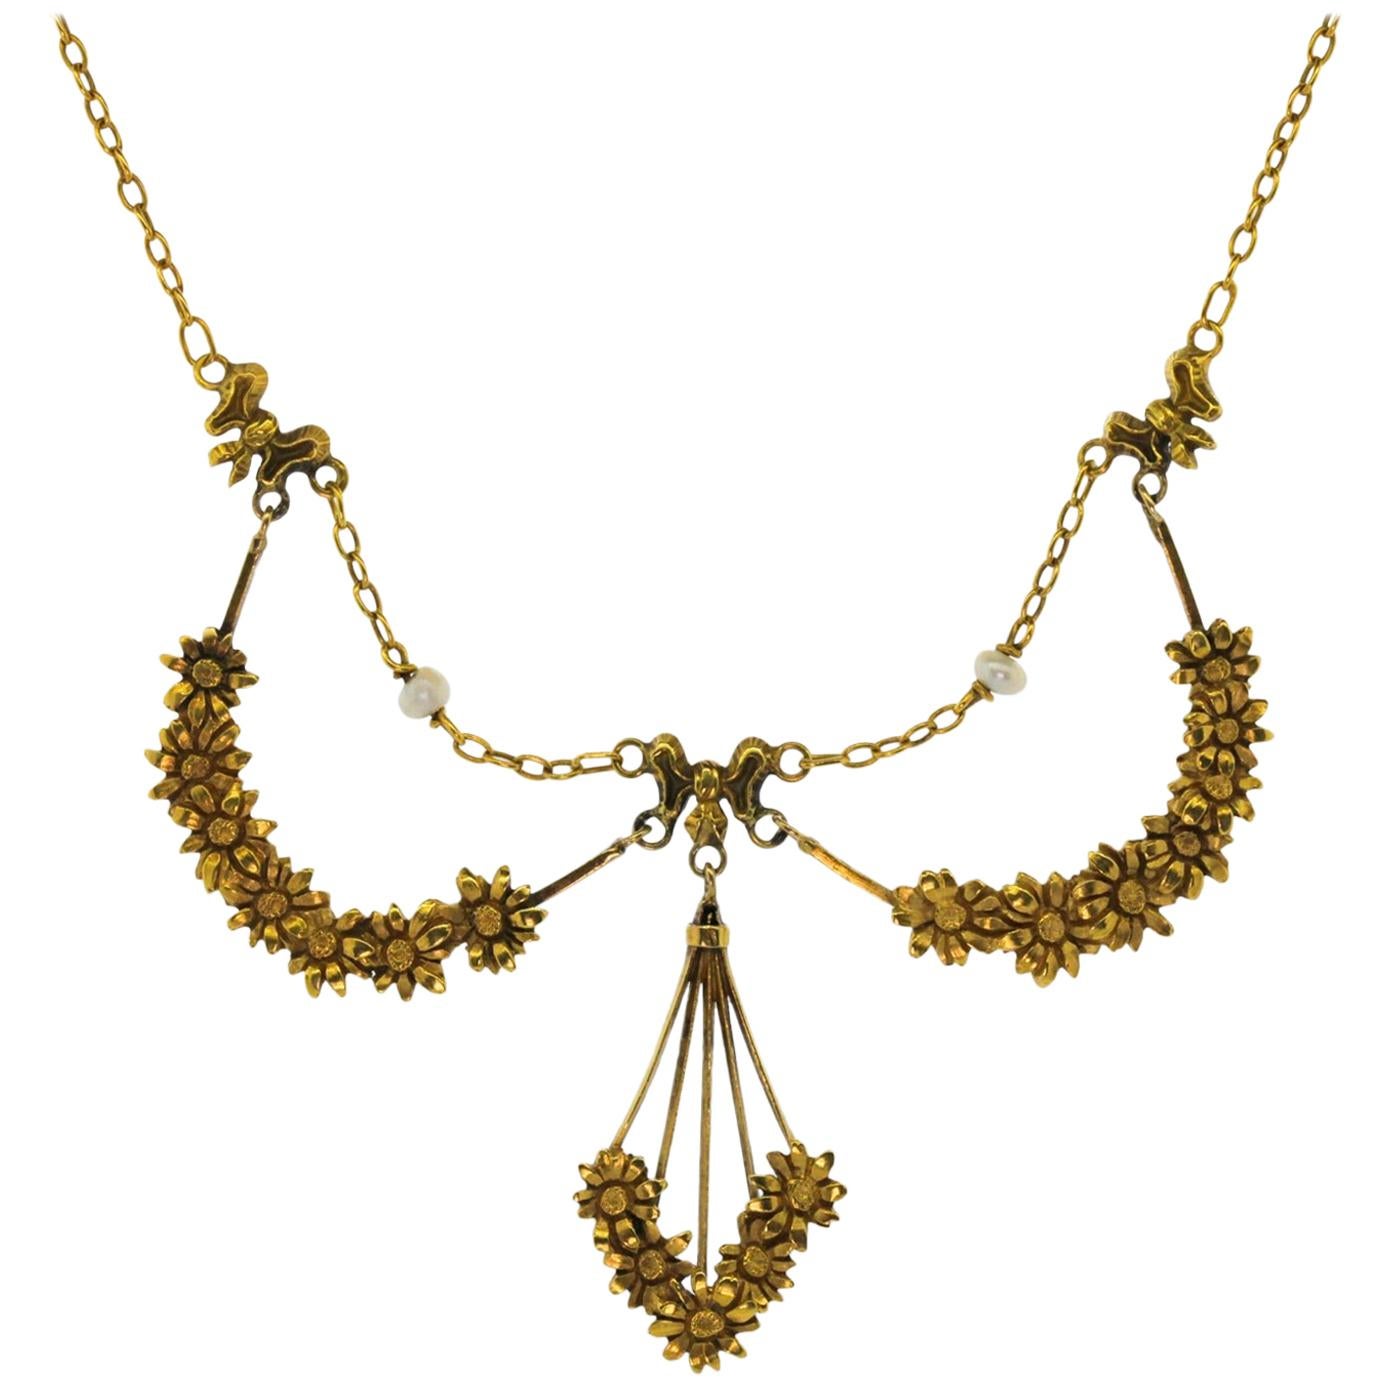 French Nouveau Gold Necklace